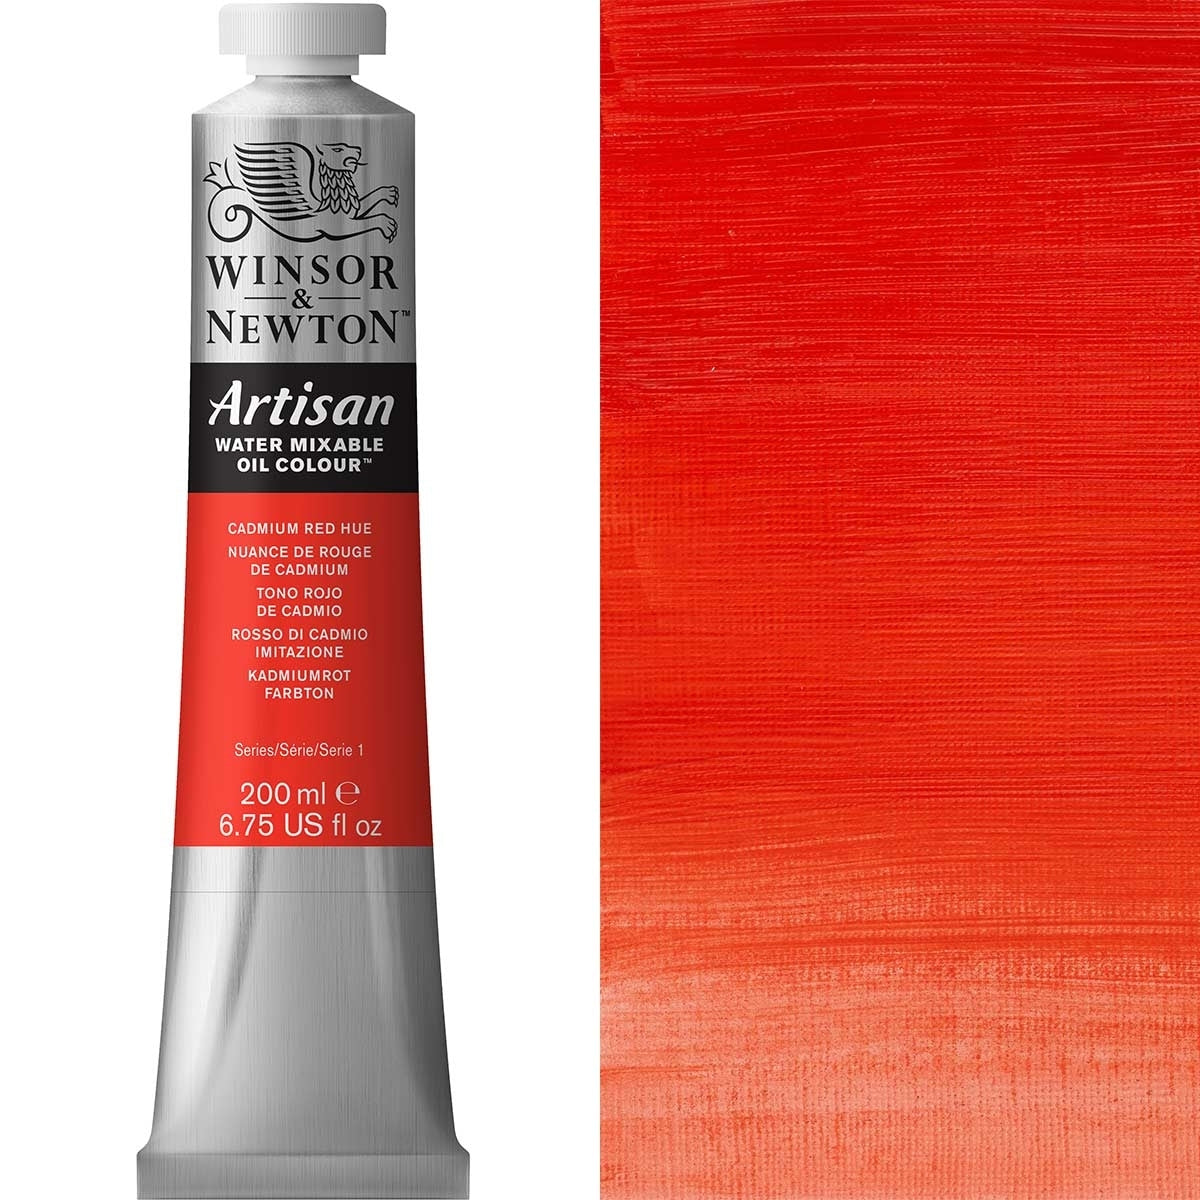 Winsor e Newton - Watermixable di colore olio artigianale - 200 ml - tonalità rossa cadmio